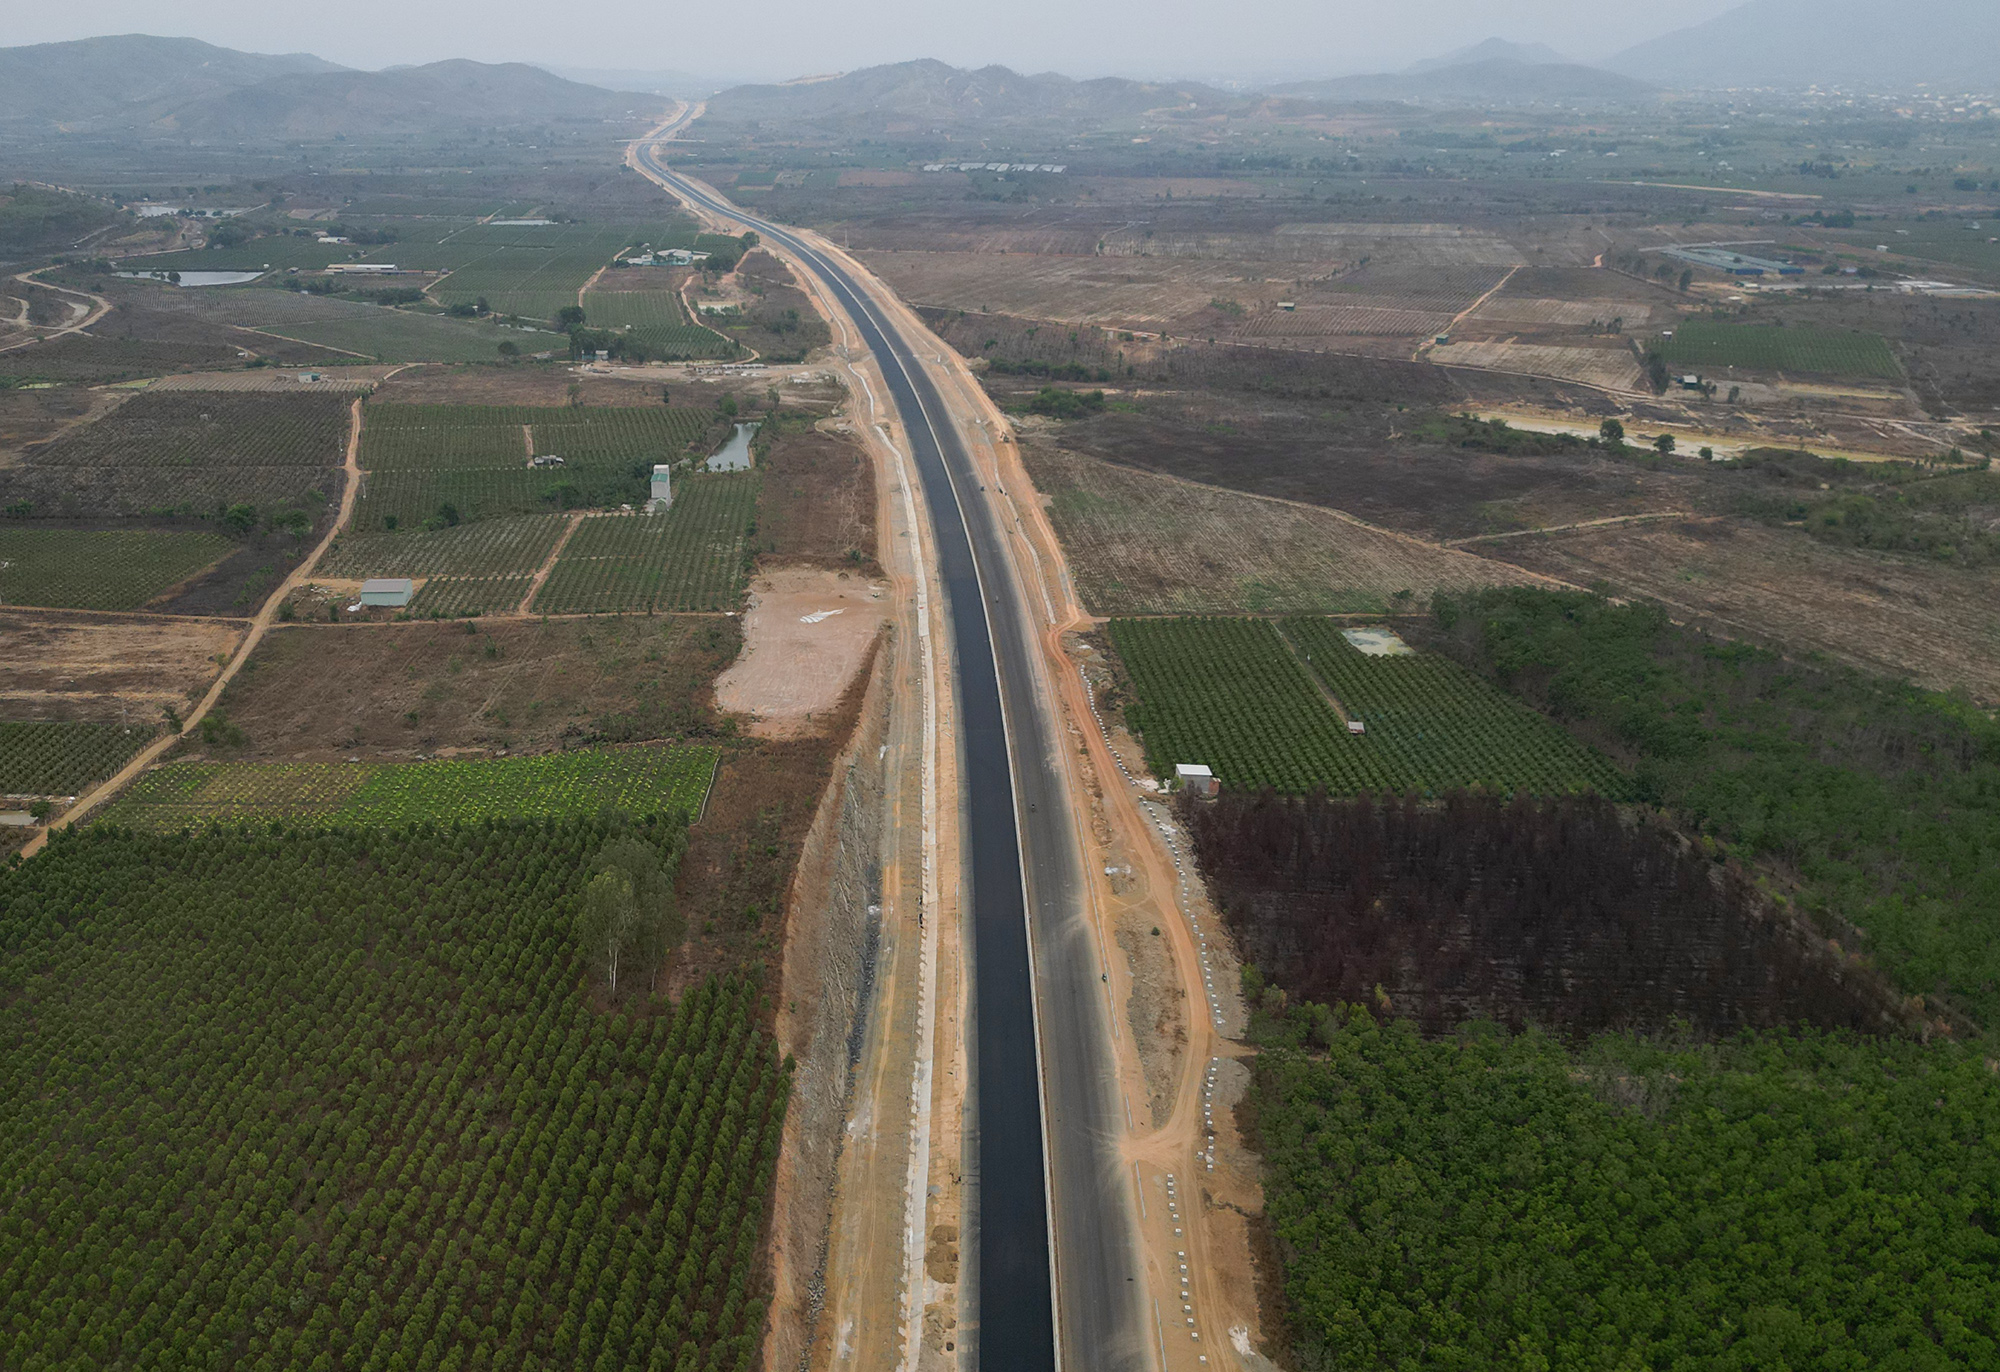 Cao tốc Dầu Giây - Phan Thiết dài 99km, đi qua địa bàn tỉnh Đồng Nai và Bình Thuận. Công trình khởi công tháng 9/2020 với tổng kinh phí hơn 12.500 tỷ đồng.